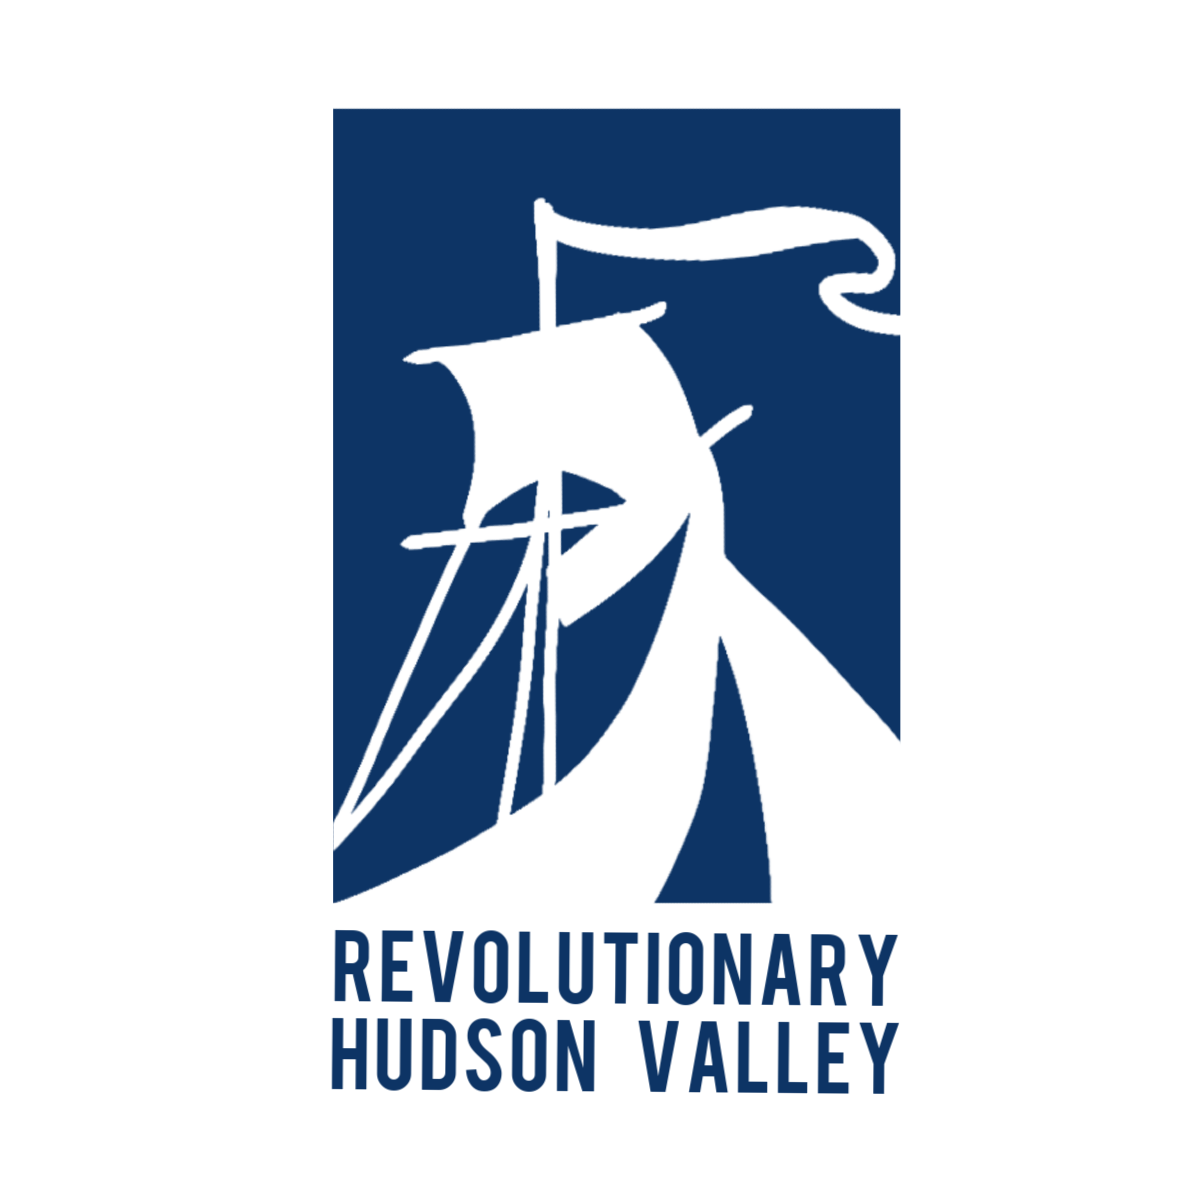 Revolutionary Hudson Valley